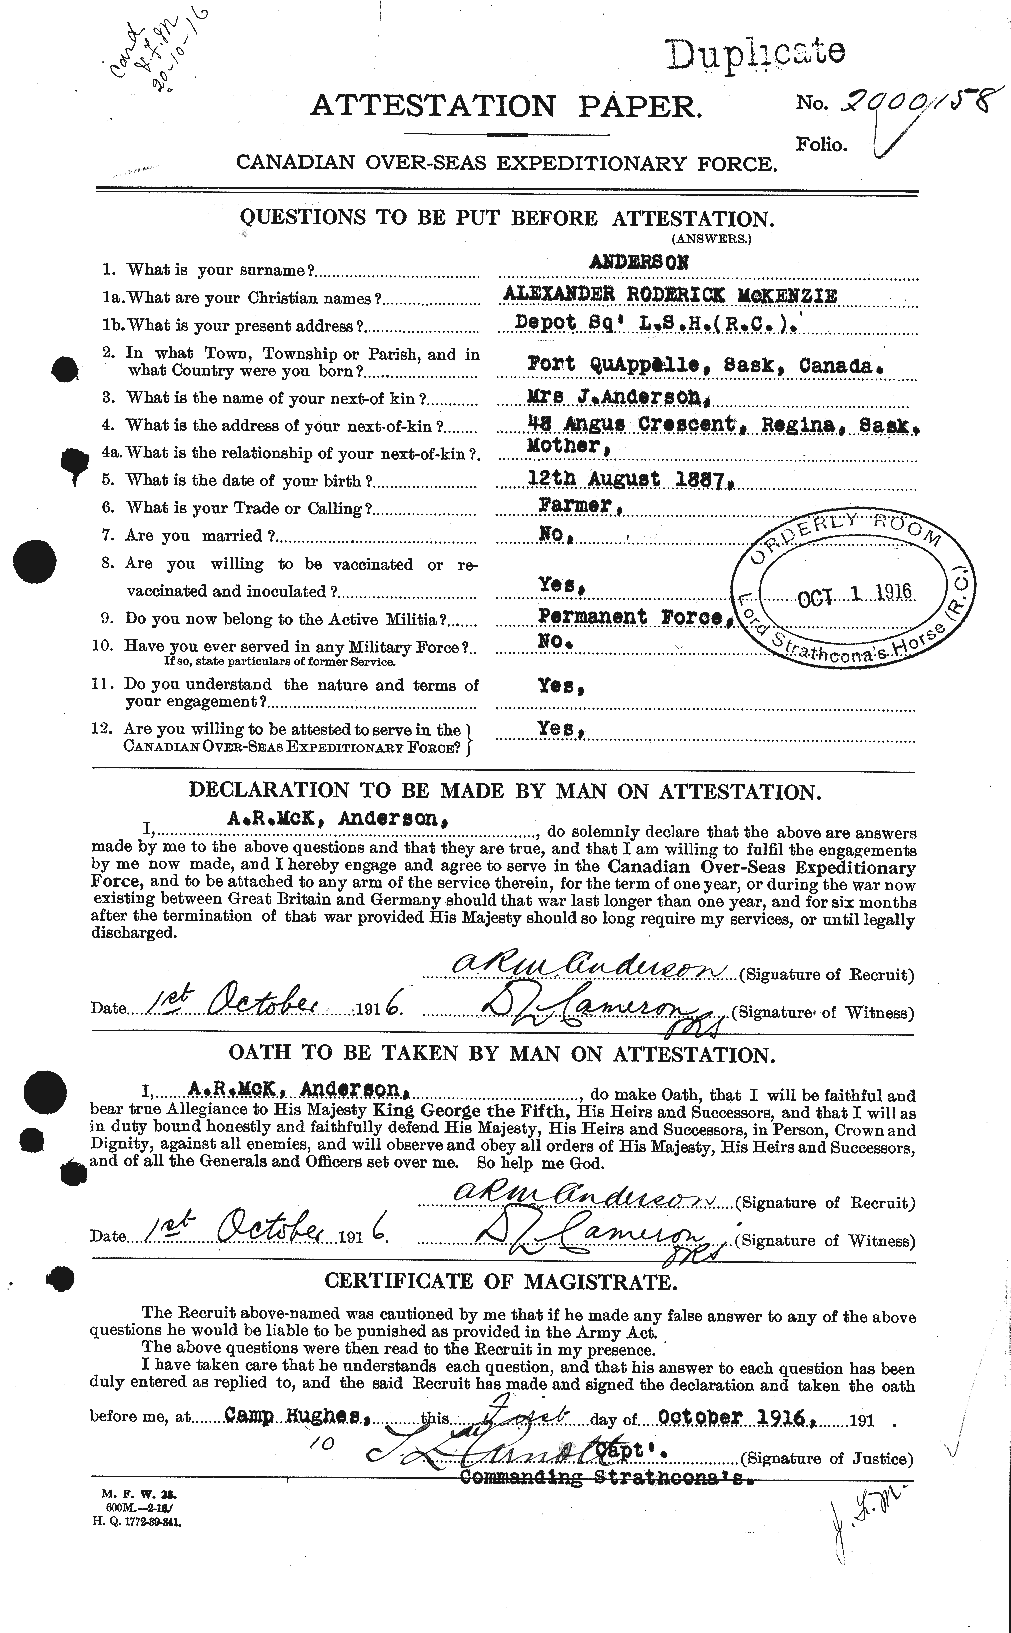 Dossiers du Personnel de la Première Guerre mondiale - CEC 209476a